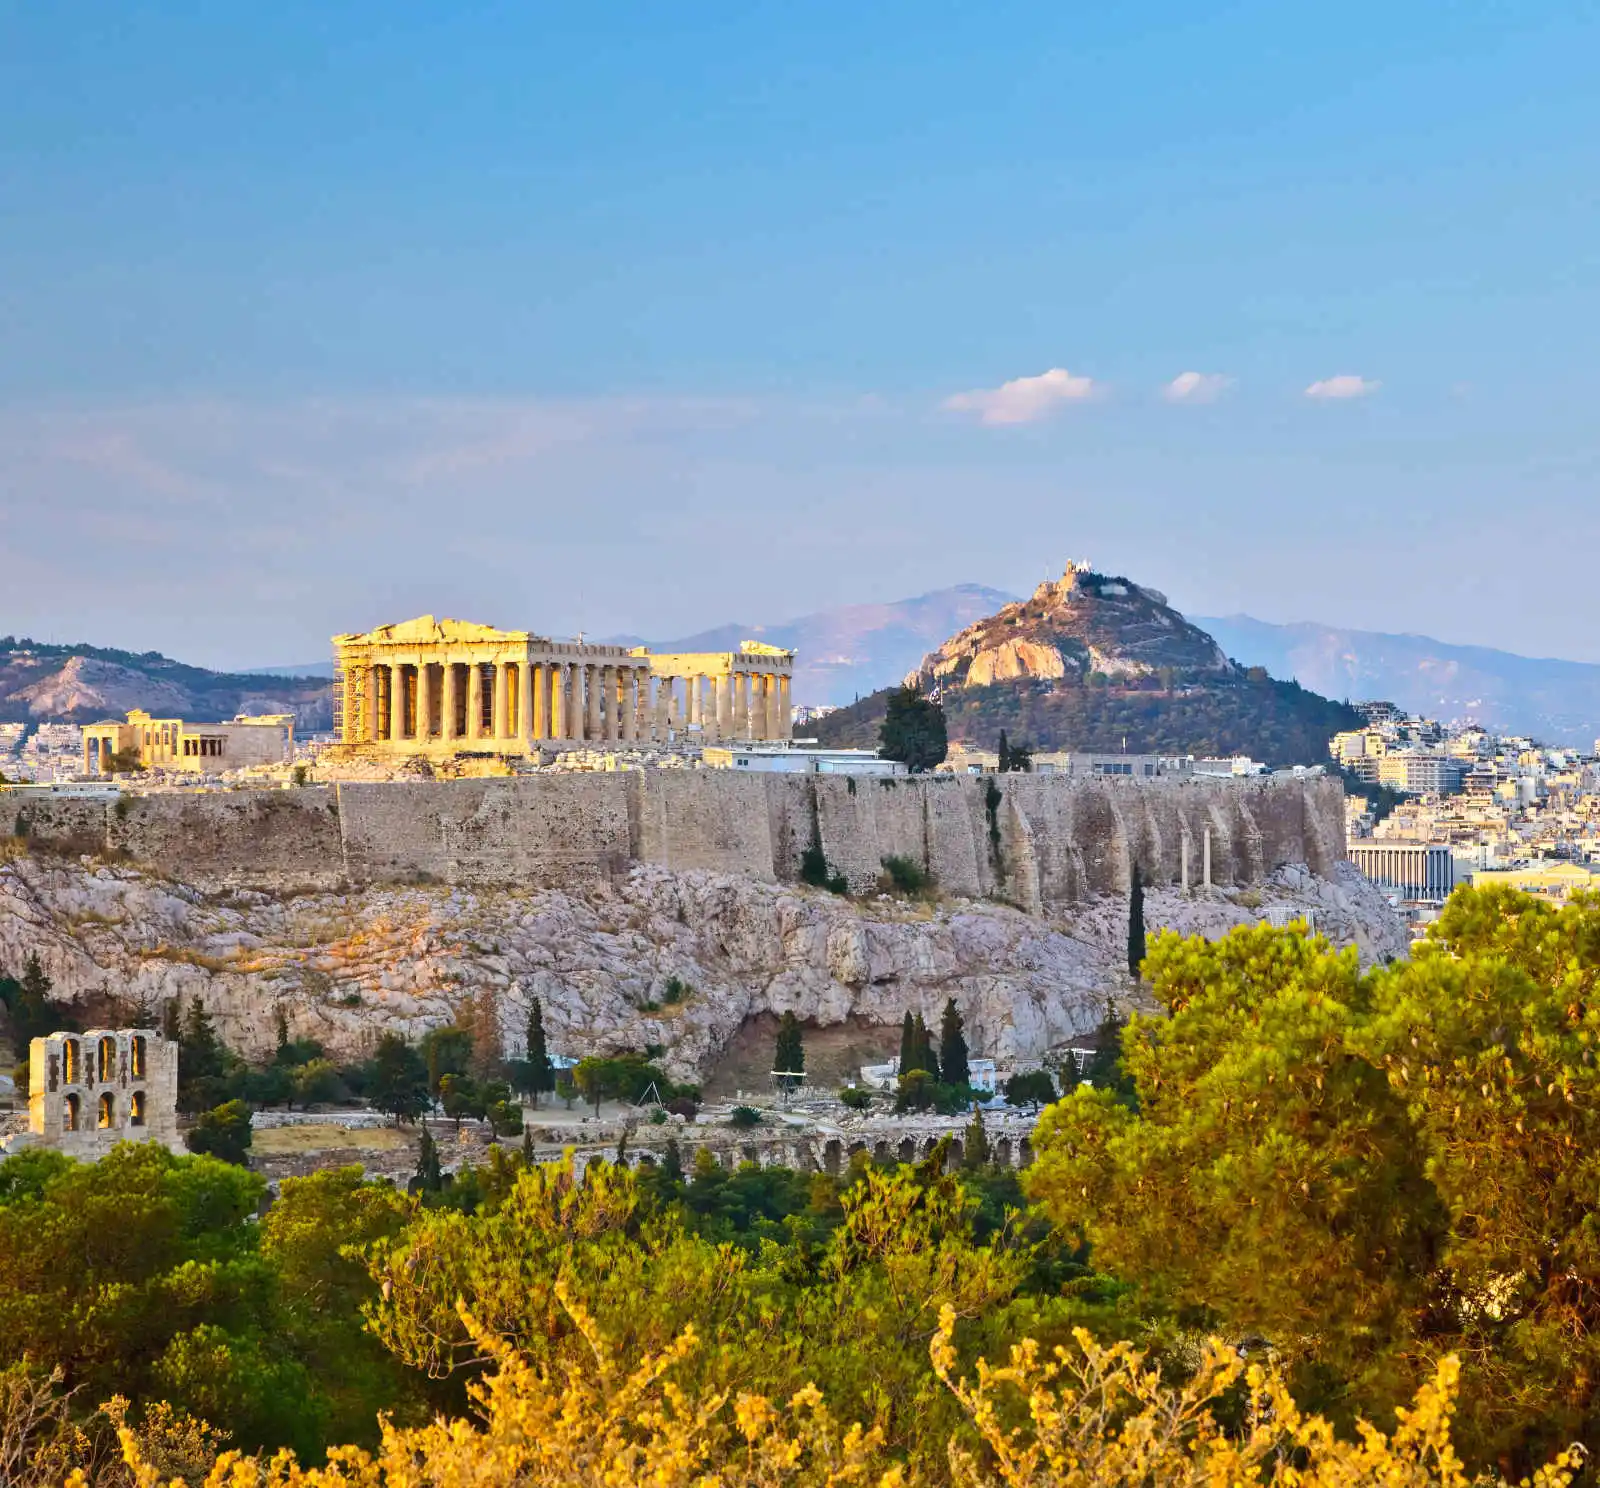 Acropole, Athènes